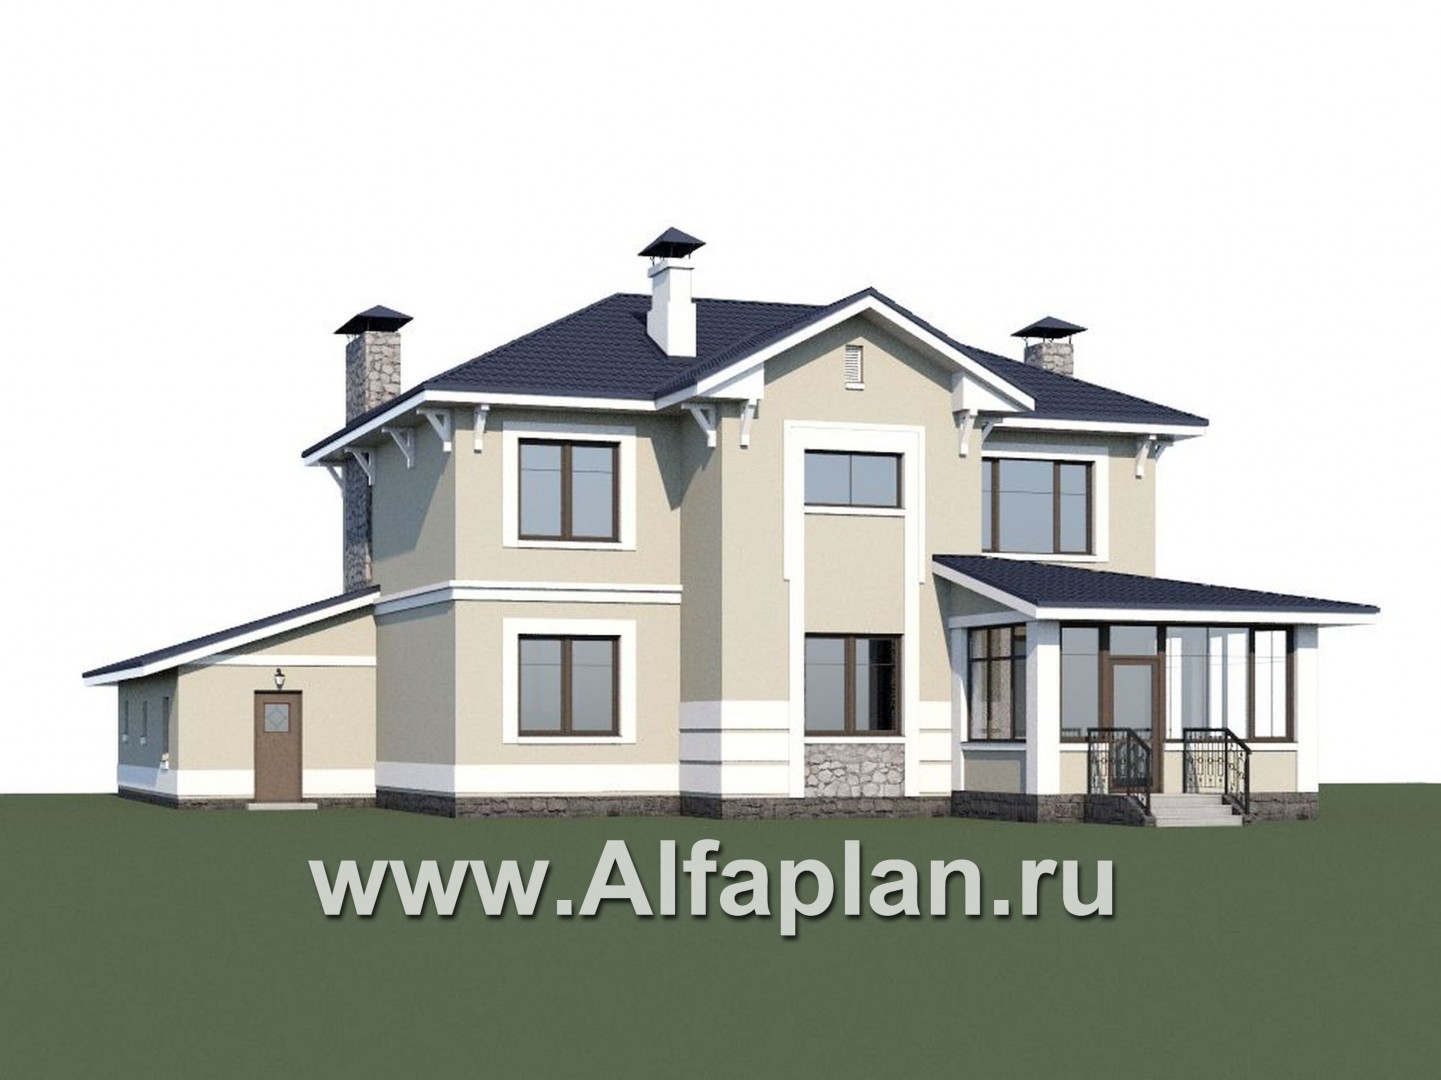 Проекты домов Альфаплан - «Семь ветров» - двухэтажный  комфортабельный коттедж с большим гаражом. - дополнительное изображение №1